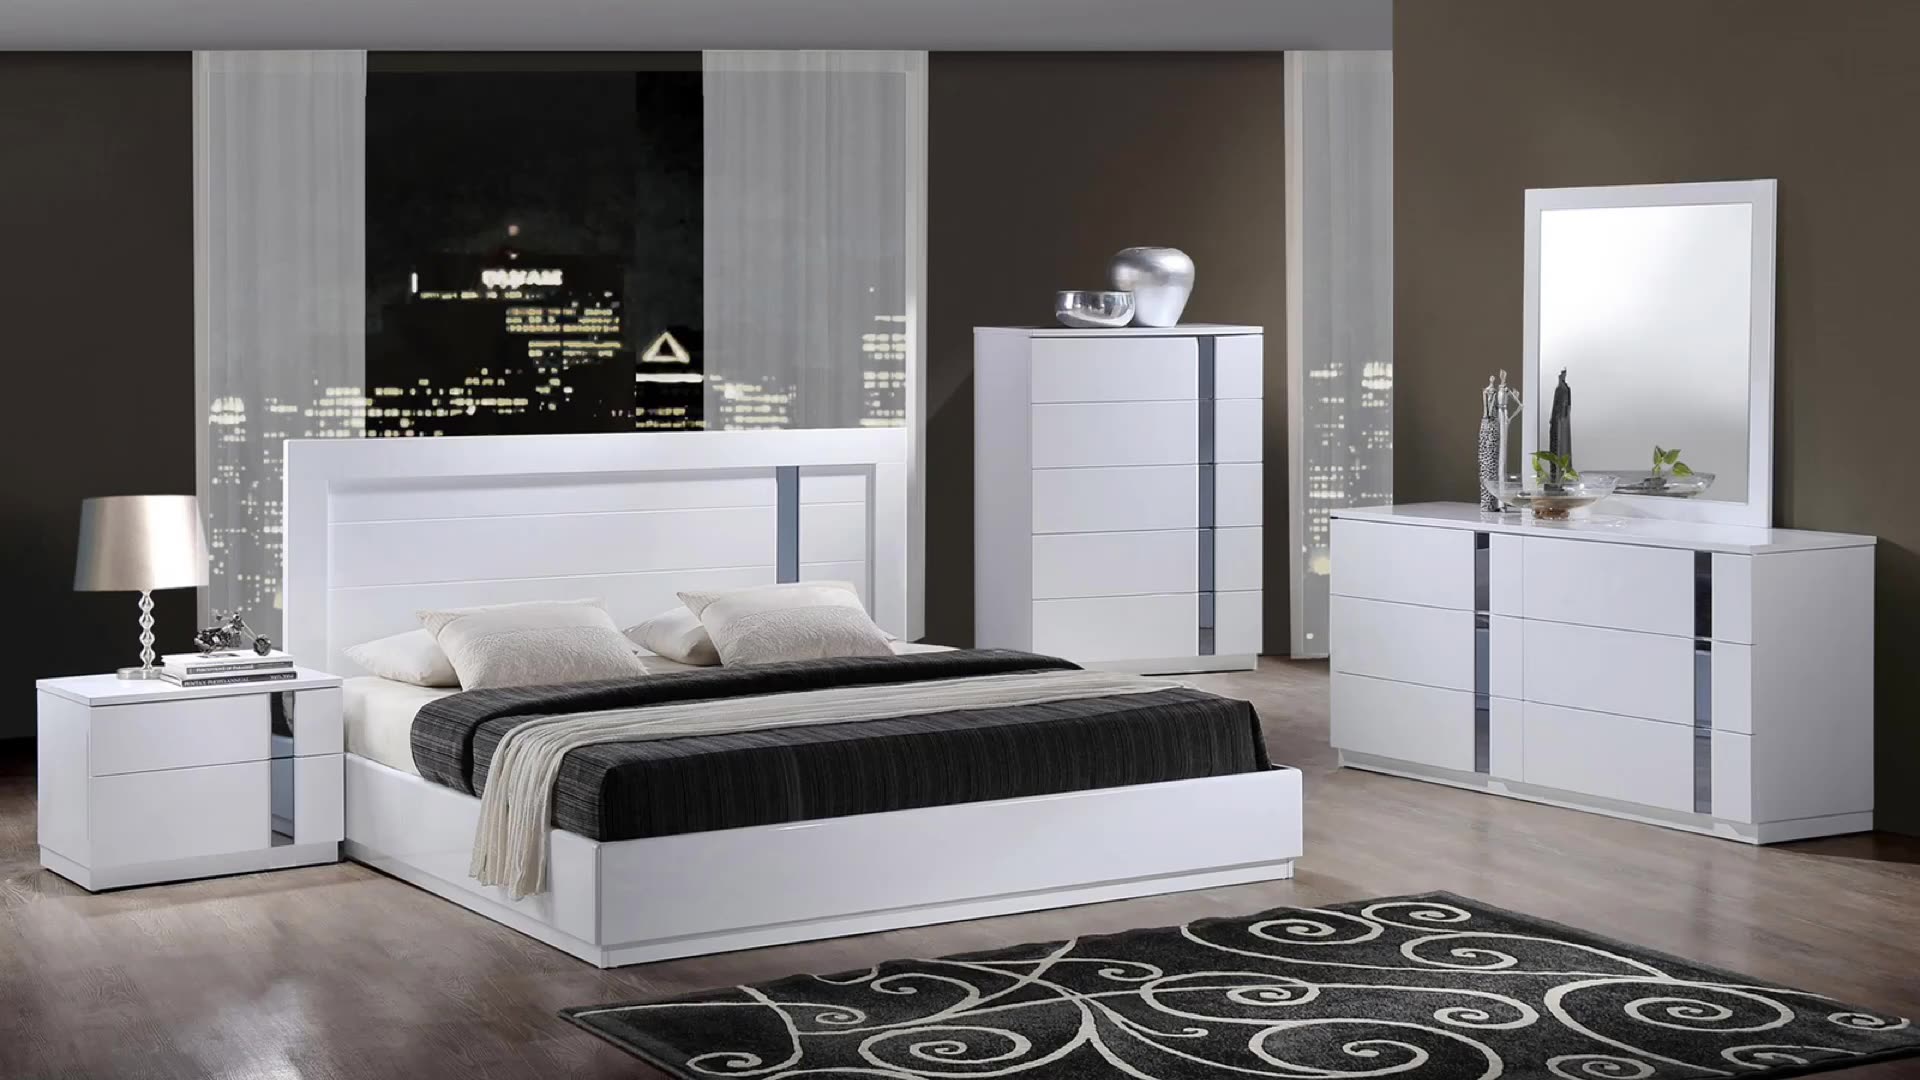 Белая мебель в интерьере: спальни, прихожей, гостиной или детской комнаты